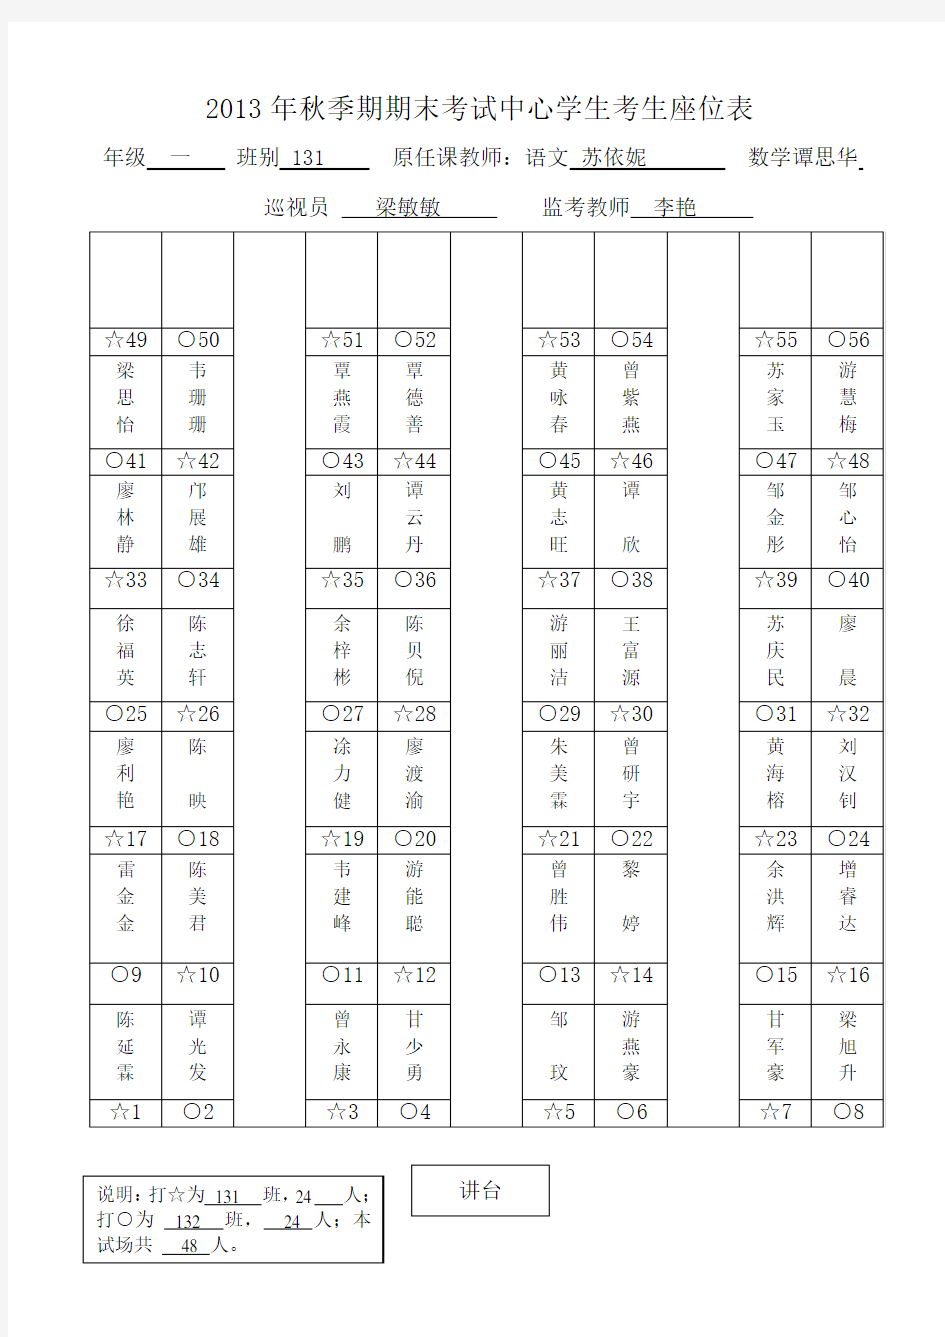 木梓镇中心学校2013年秋季期期末考试考生座位表